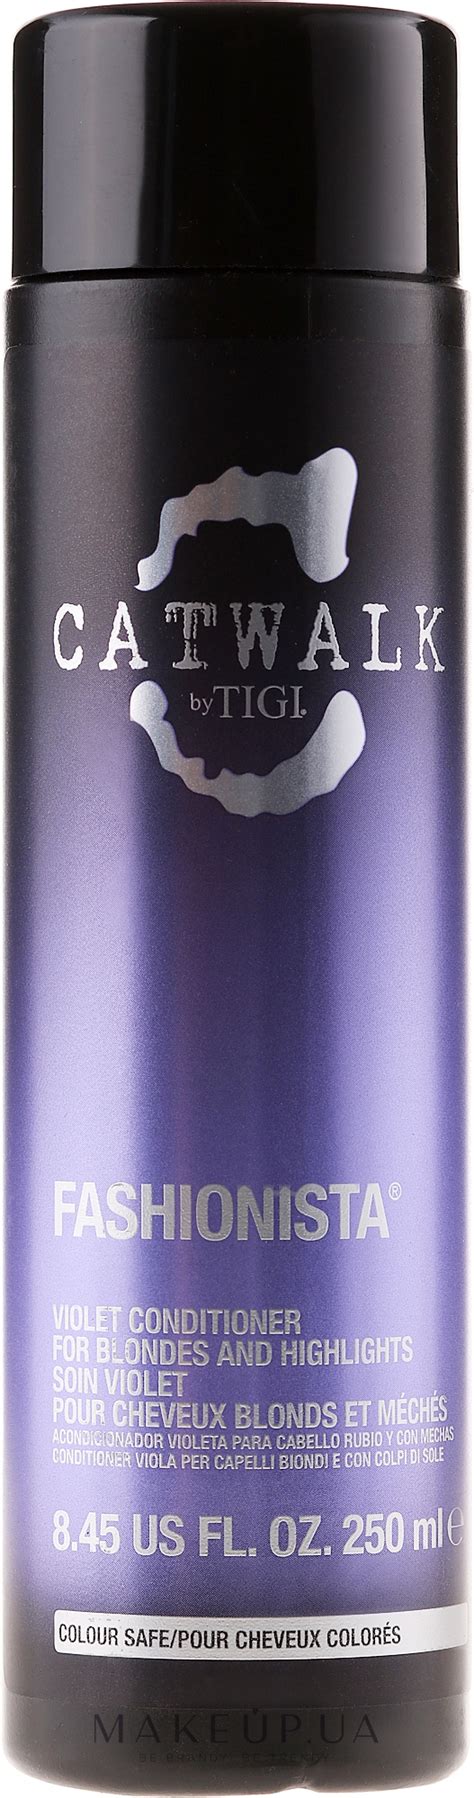 Tigi Catwalk Fashionista Violet Conditioner Фиолетовый кондиционер